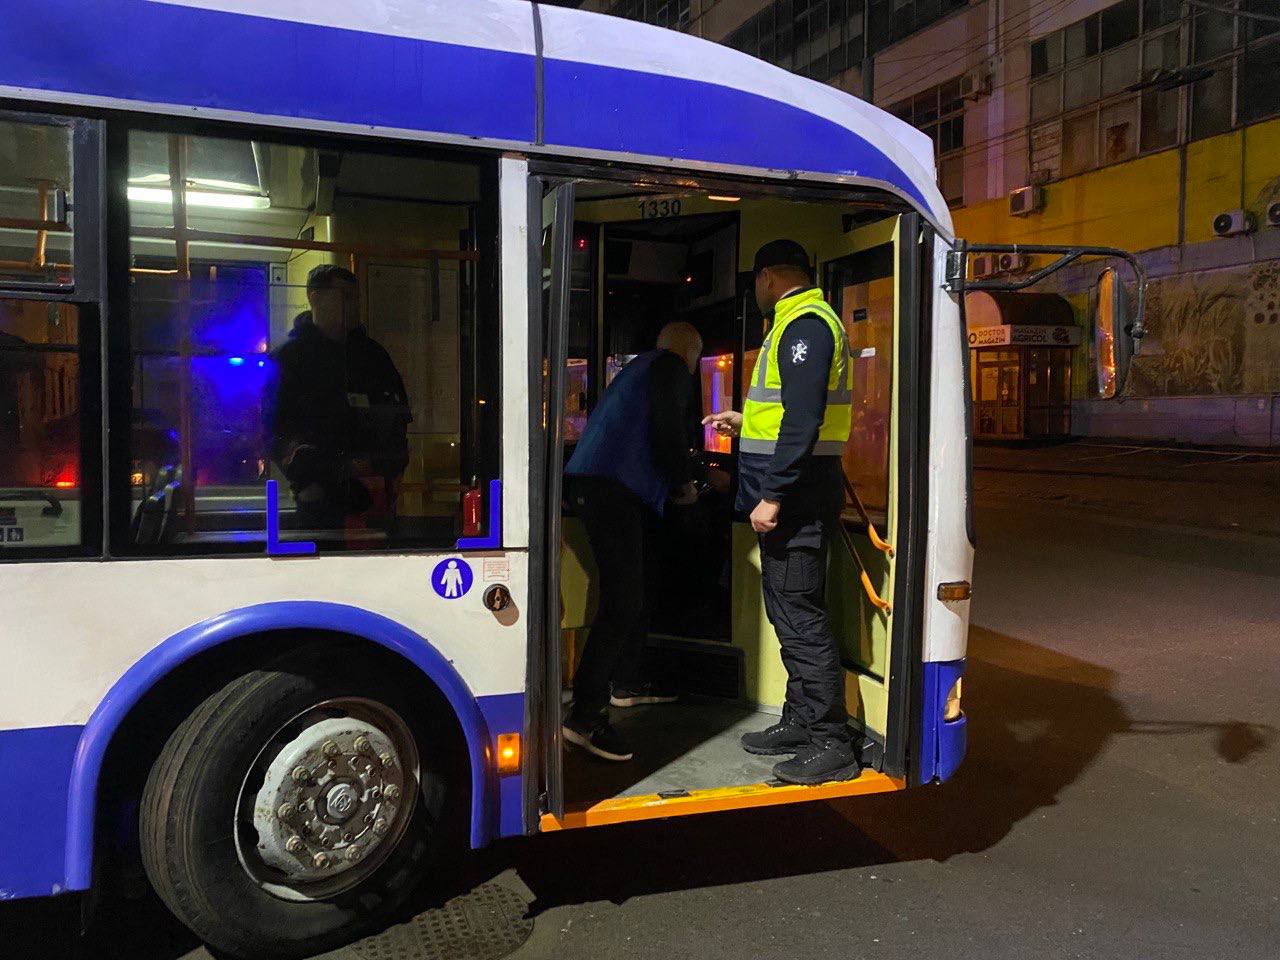 Poliția efectuează verificări ale transportului public: 23 plăcuțe de imatriculare și 6 permise au fost ridicate